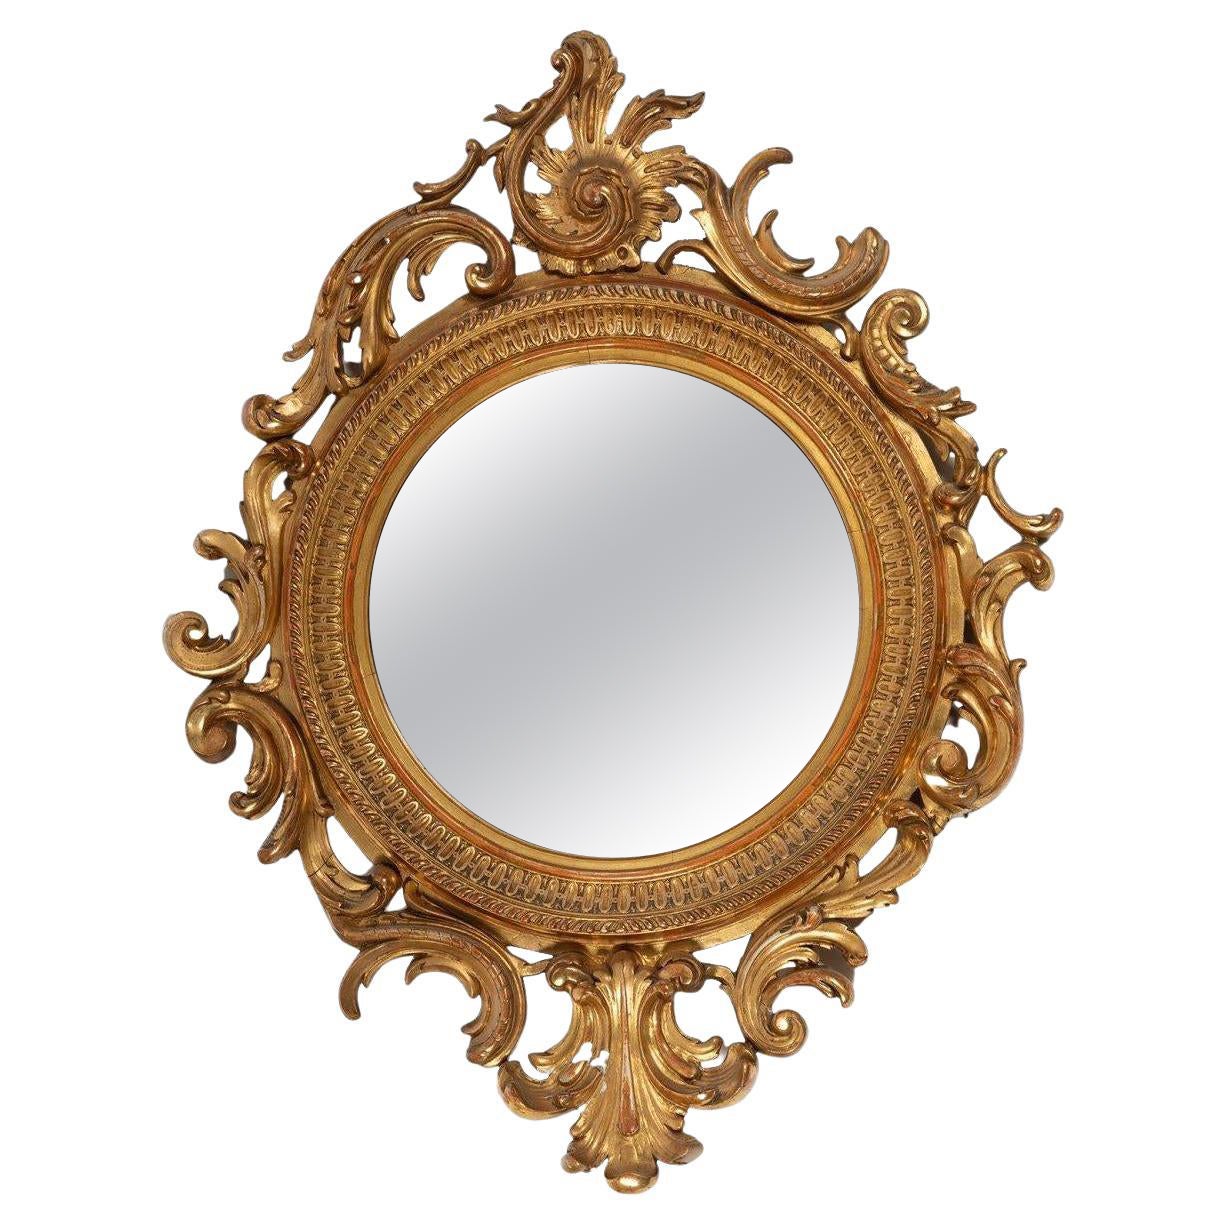 Miroir circulaire Empire français du 19ème siècle avec cadre en bois doré